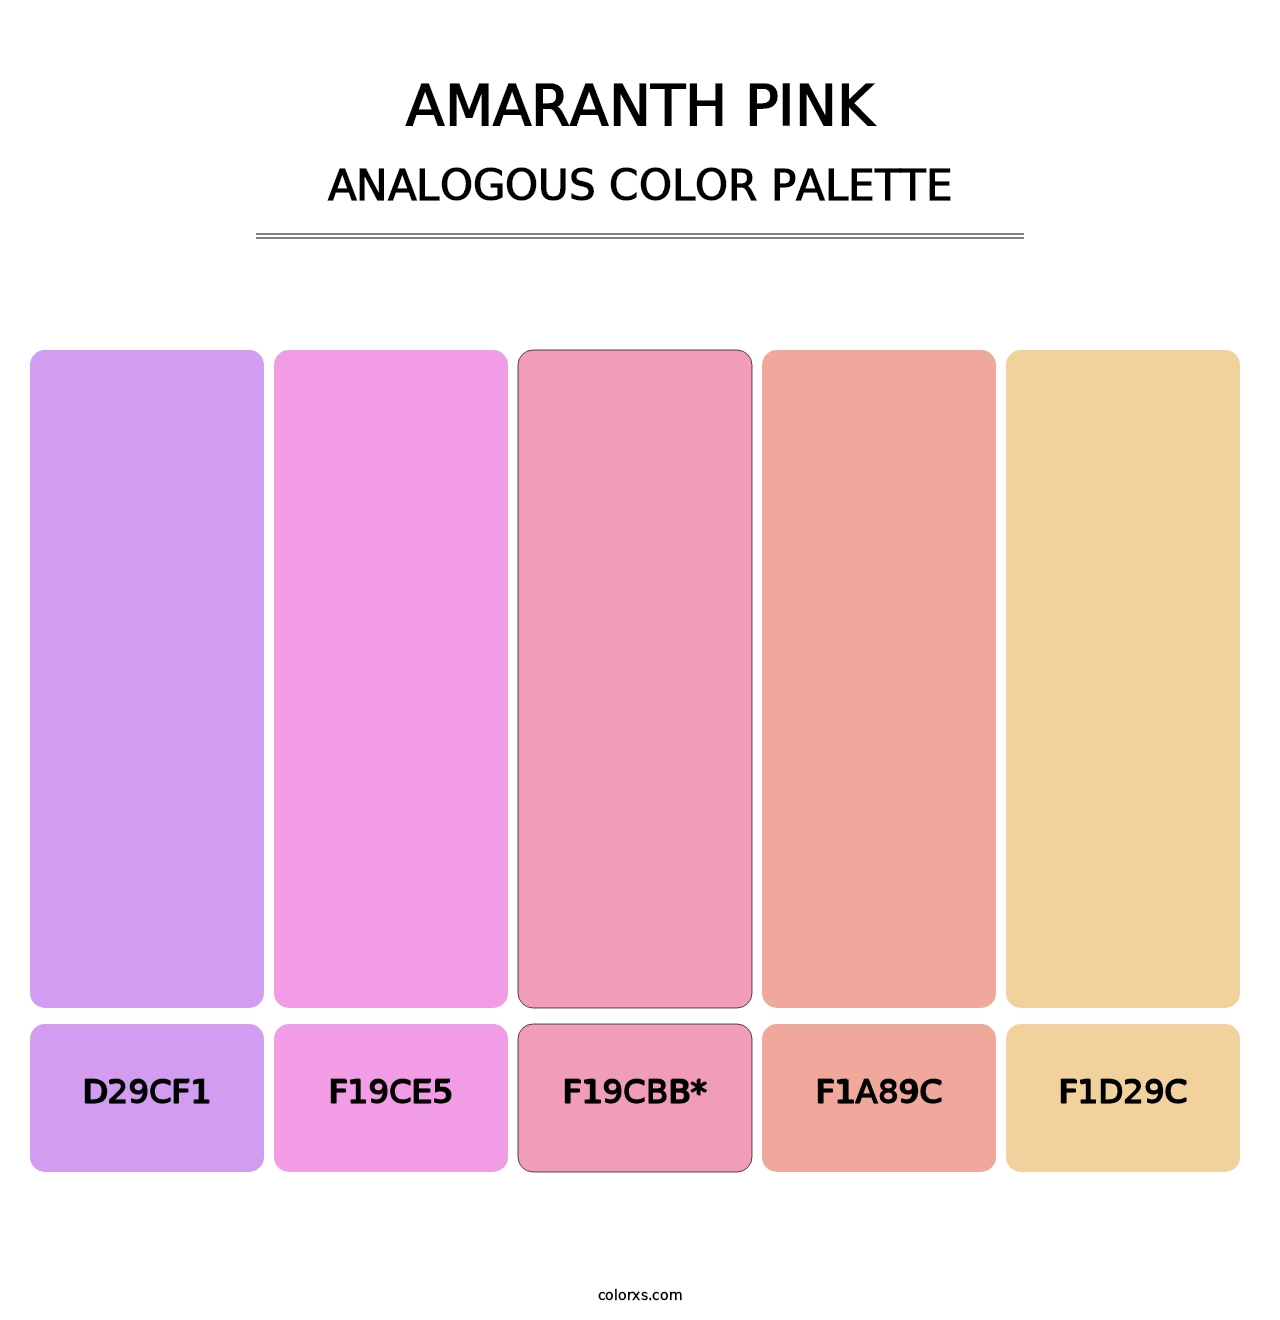 Amaranth Pink - Analogous Color Palette